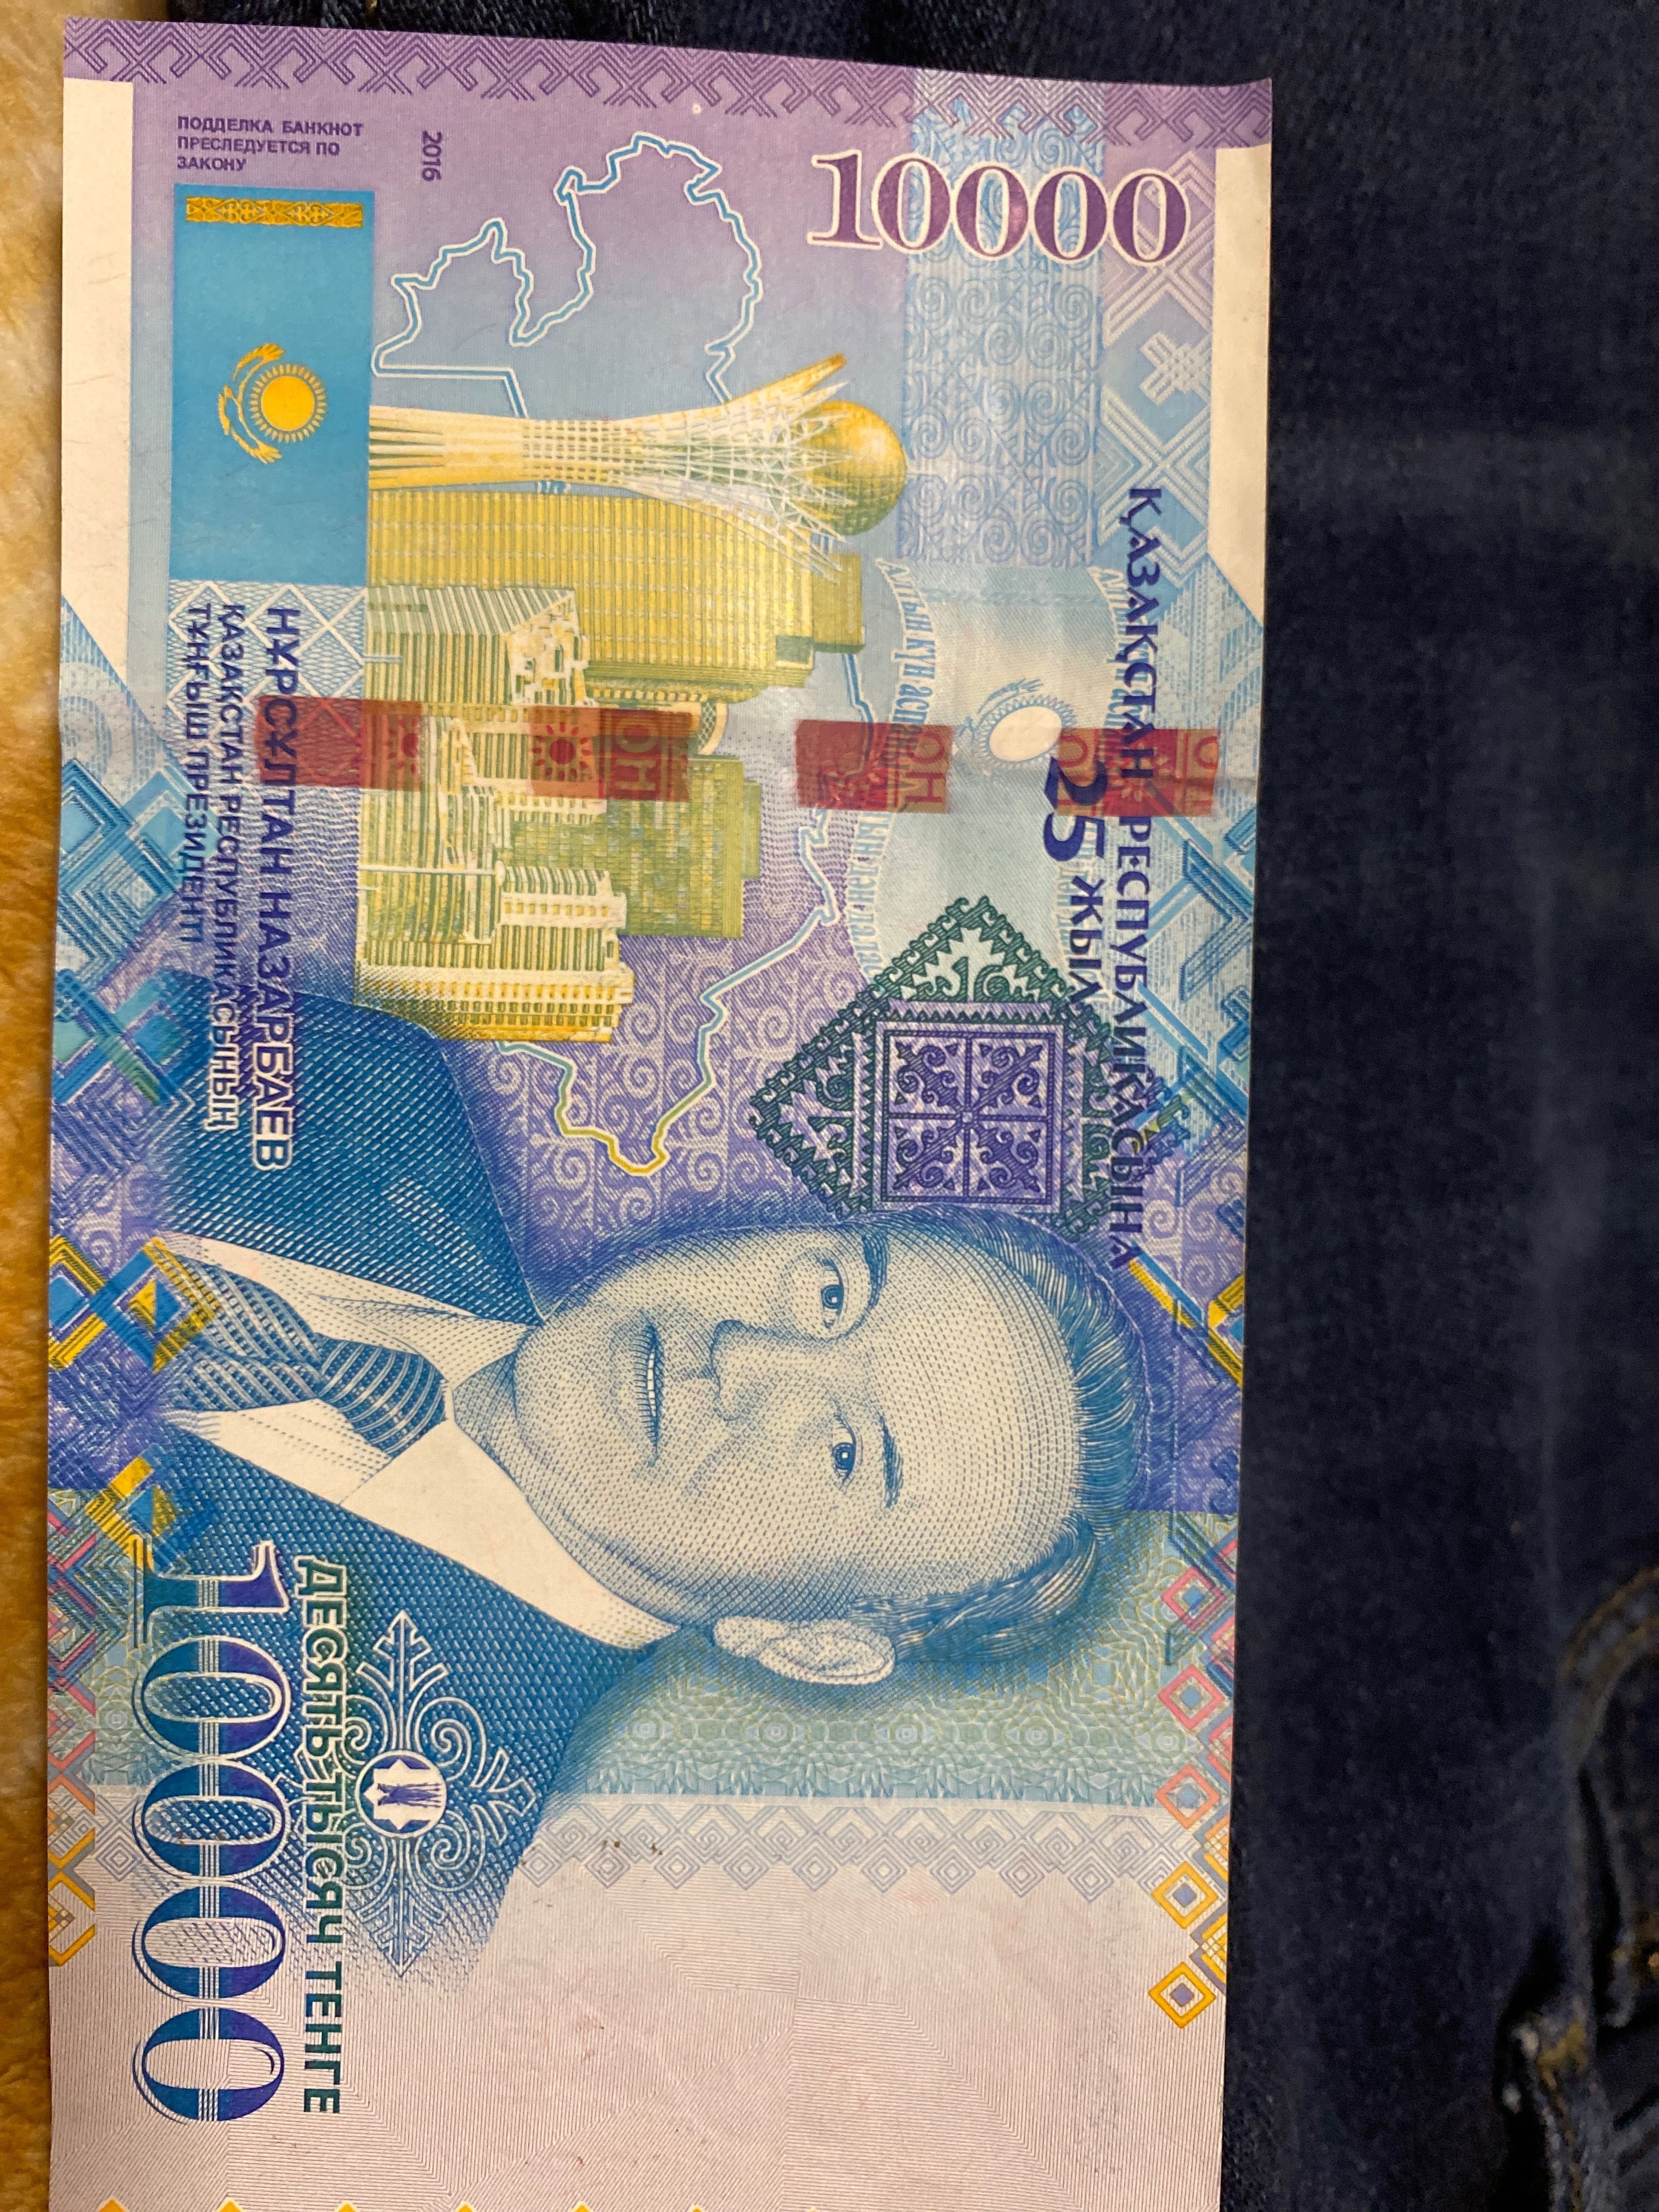 Купюра 10000 тенге с изображением Н. Назарбаева